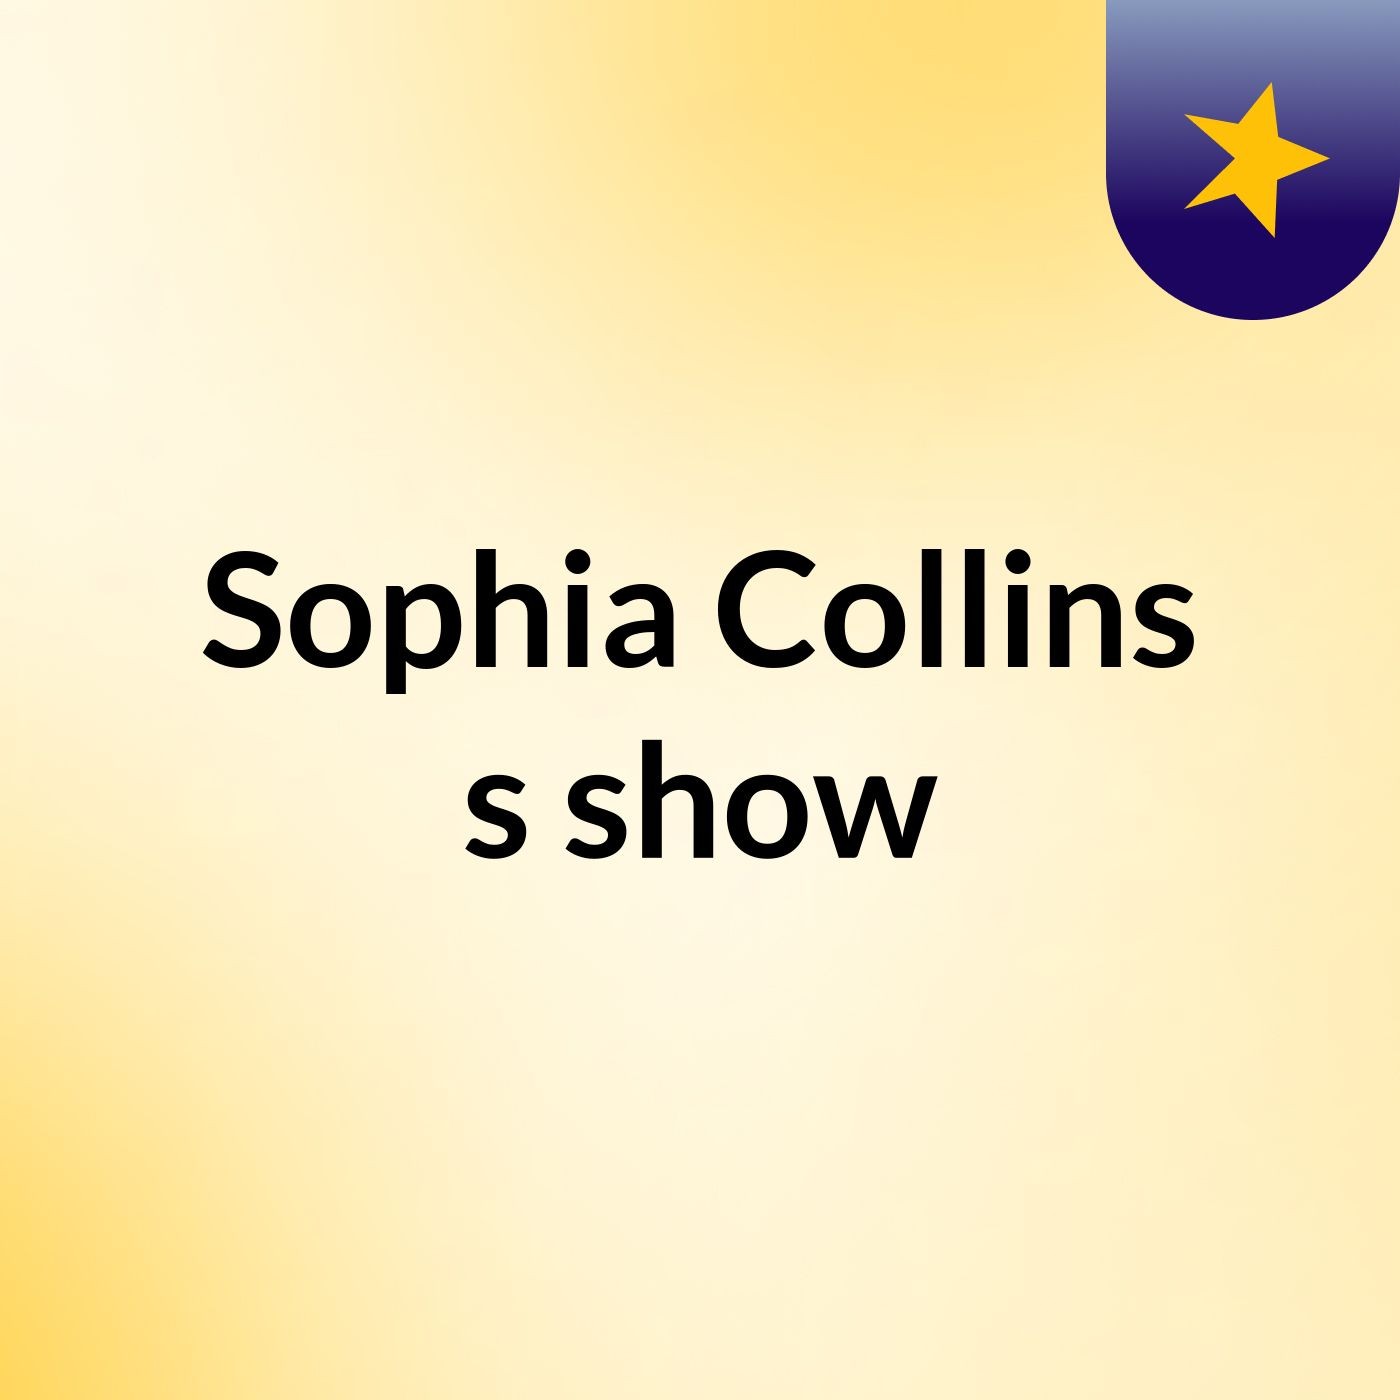 Sophia Collins's show